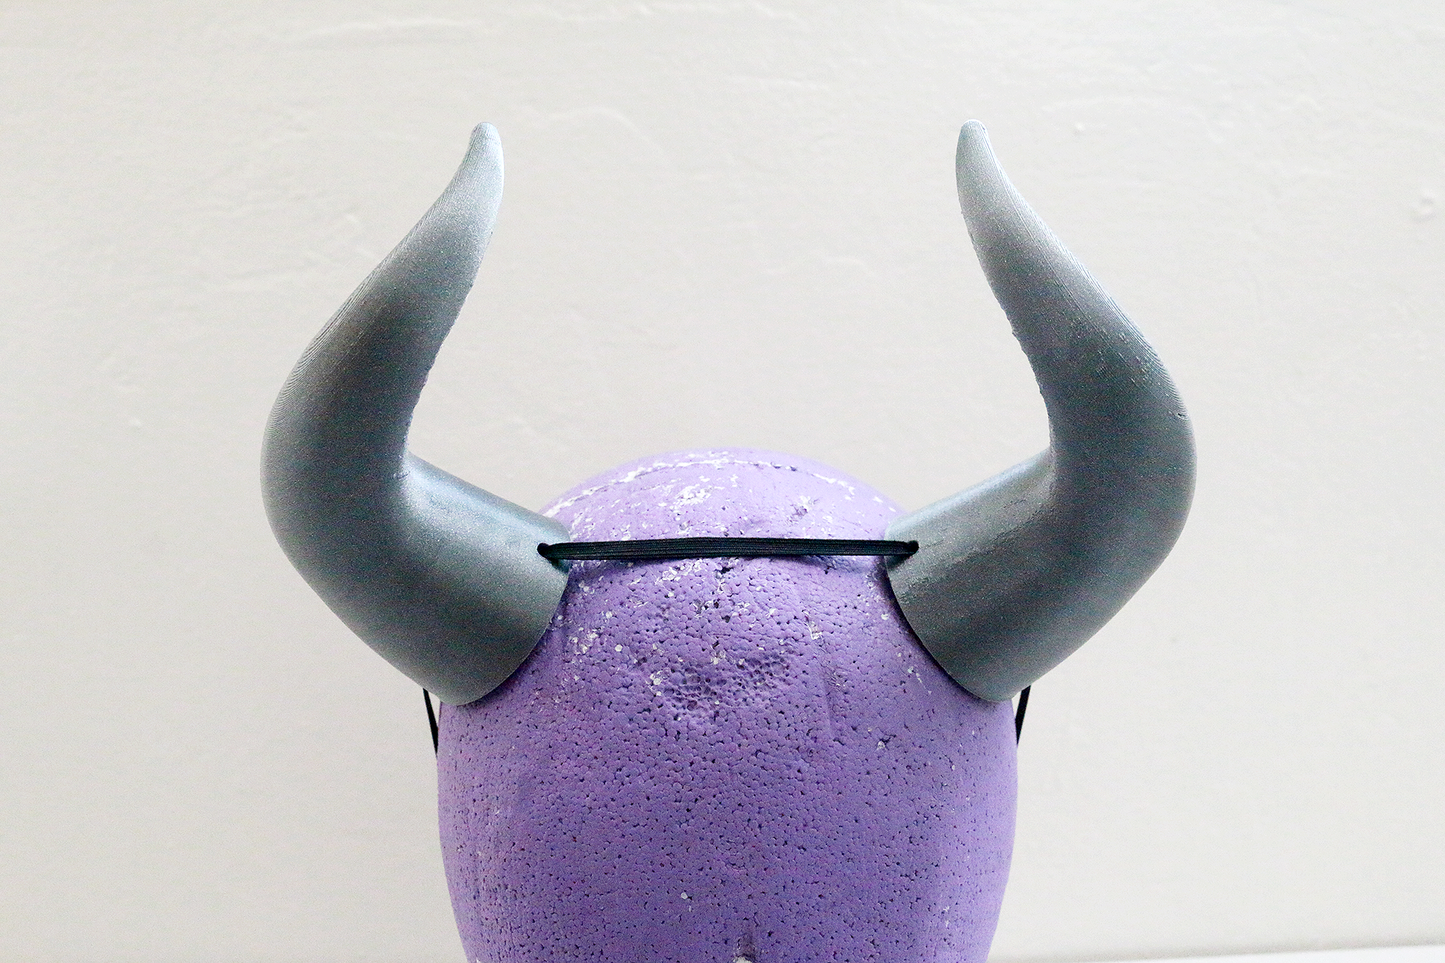 Medium "Goat" Costume Horns